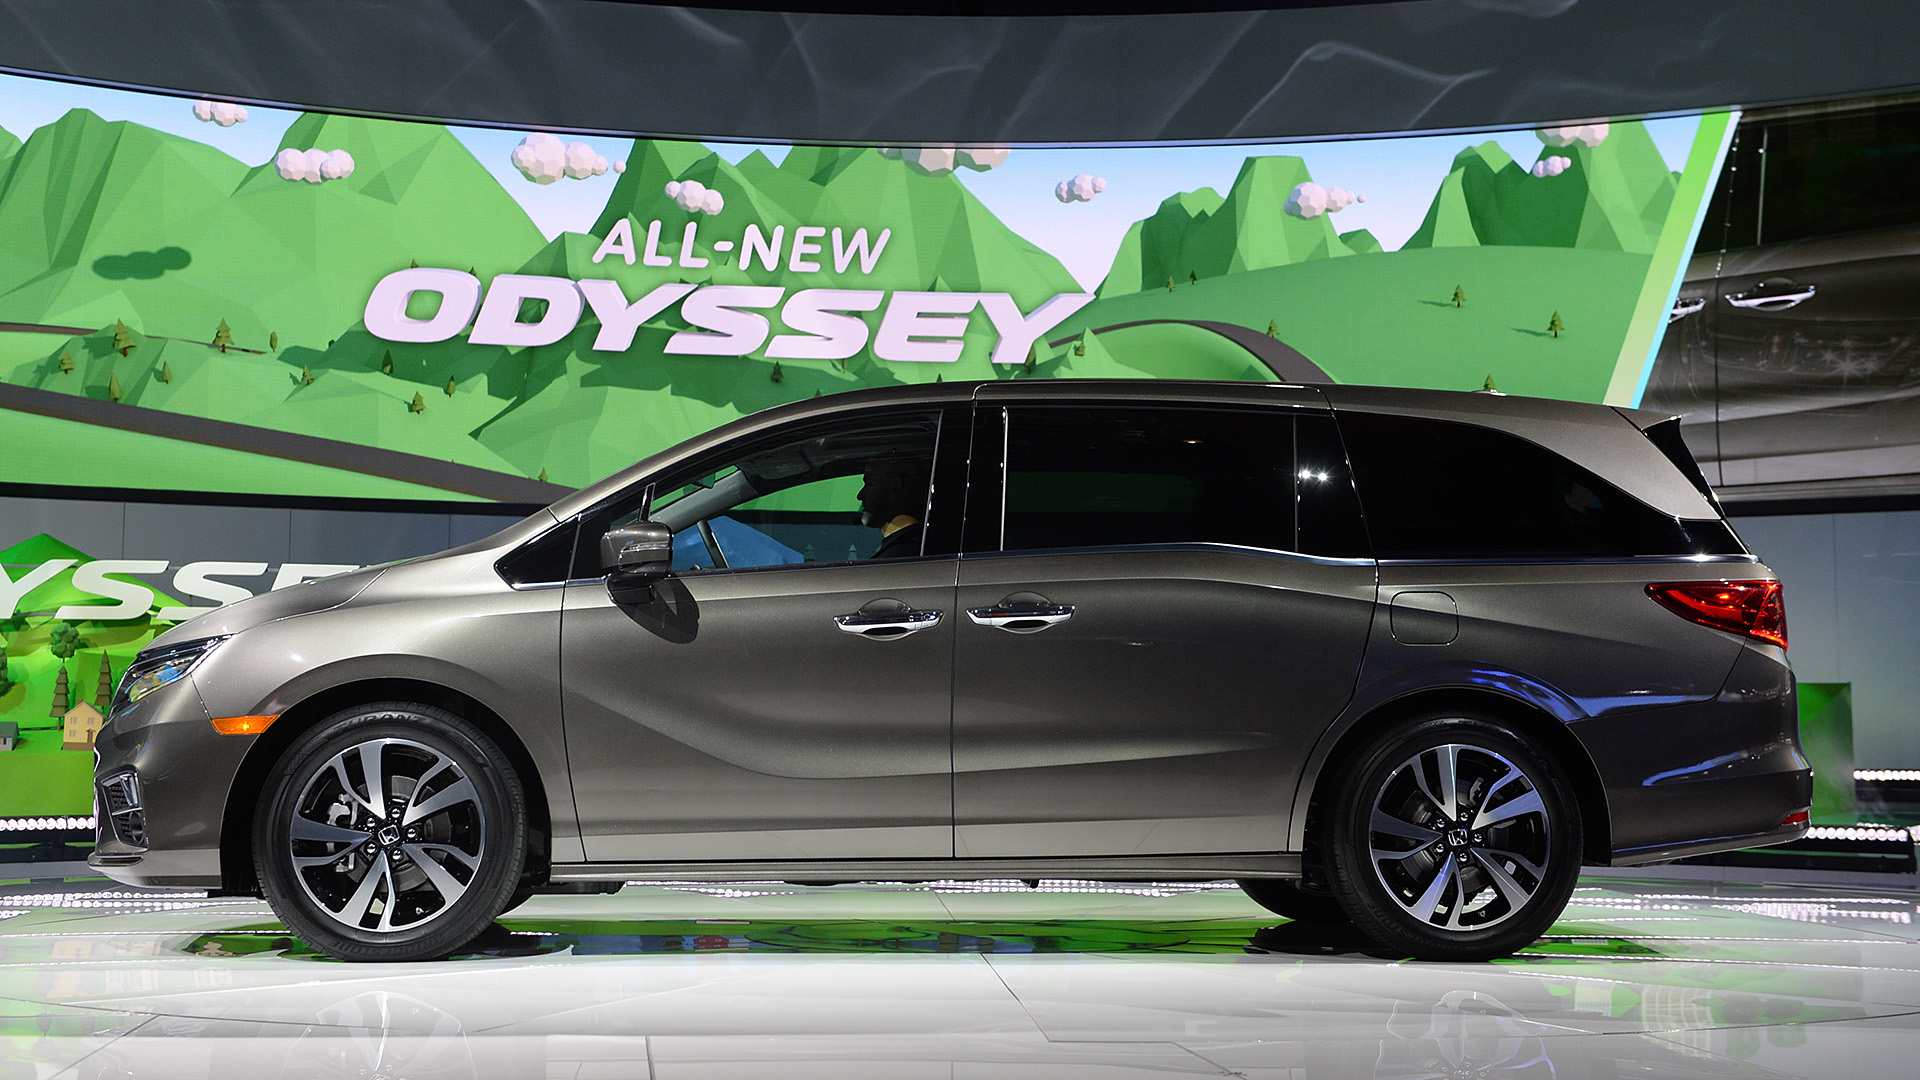 Đánh giá xe Honda Odyssey 2018 về thiết kế nội ngoại thất và giá bán   MuasamXecom